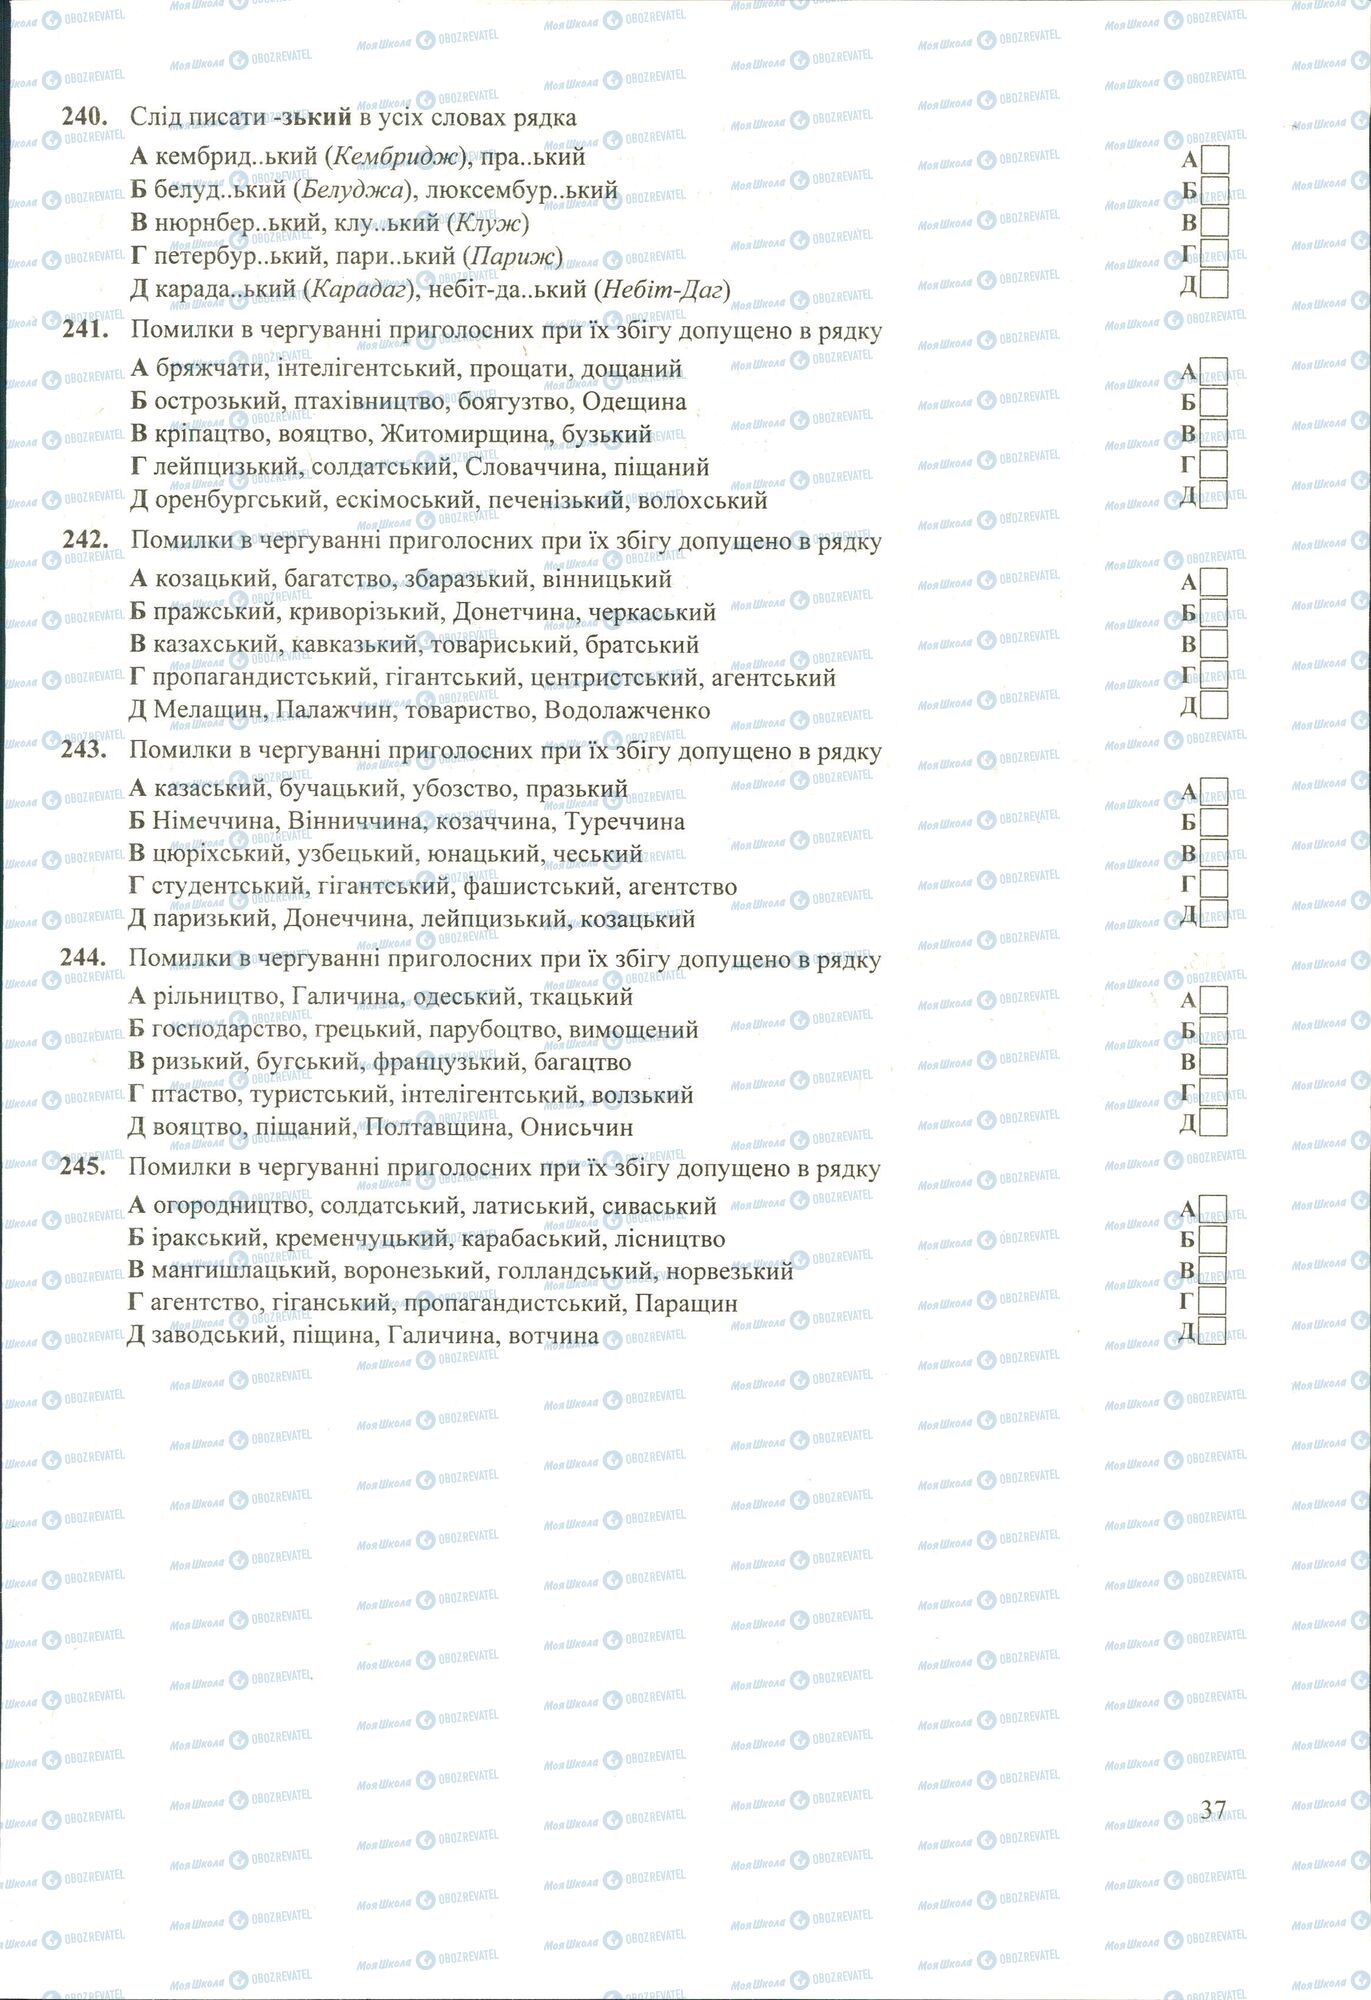 ЗНО Укр мова 11 класс страница 240-245